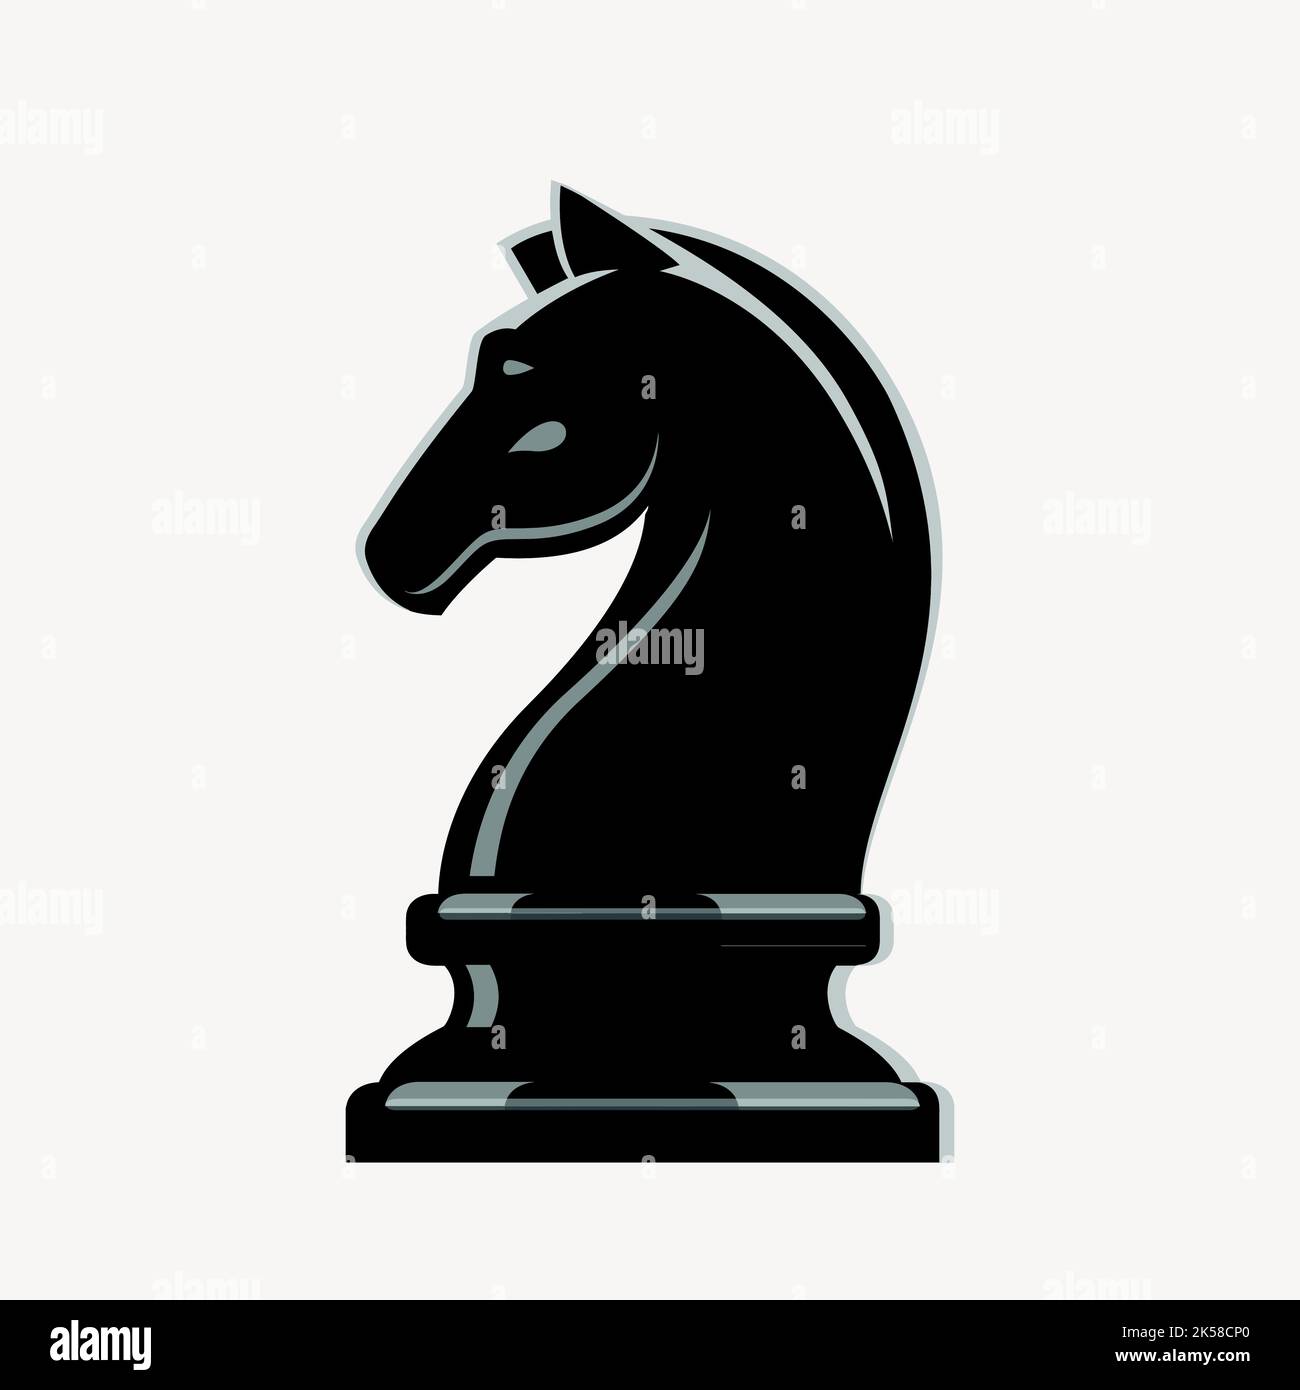 2 коня шахматы. Шахматный конь. Шахматная фигура конь. Лошадь шахматная фигура. Фигура коня в шахматах.